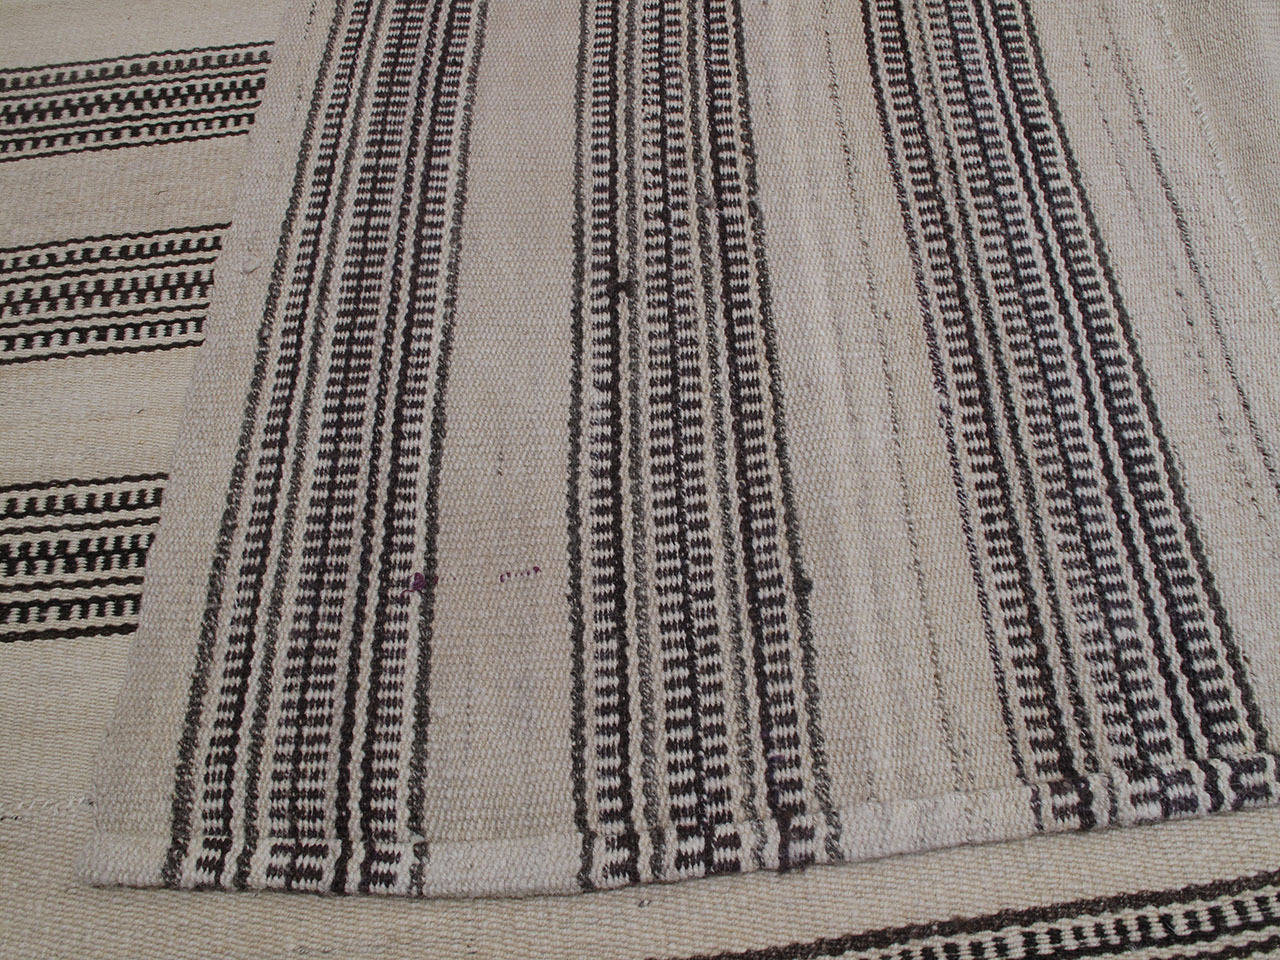 Striped Kilim in Natural Tones 2